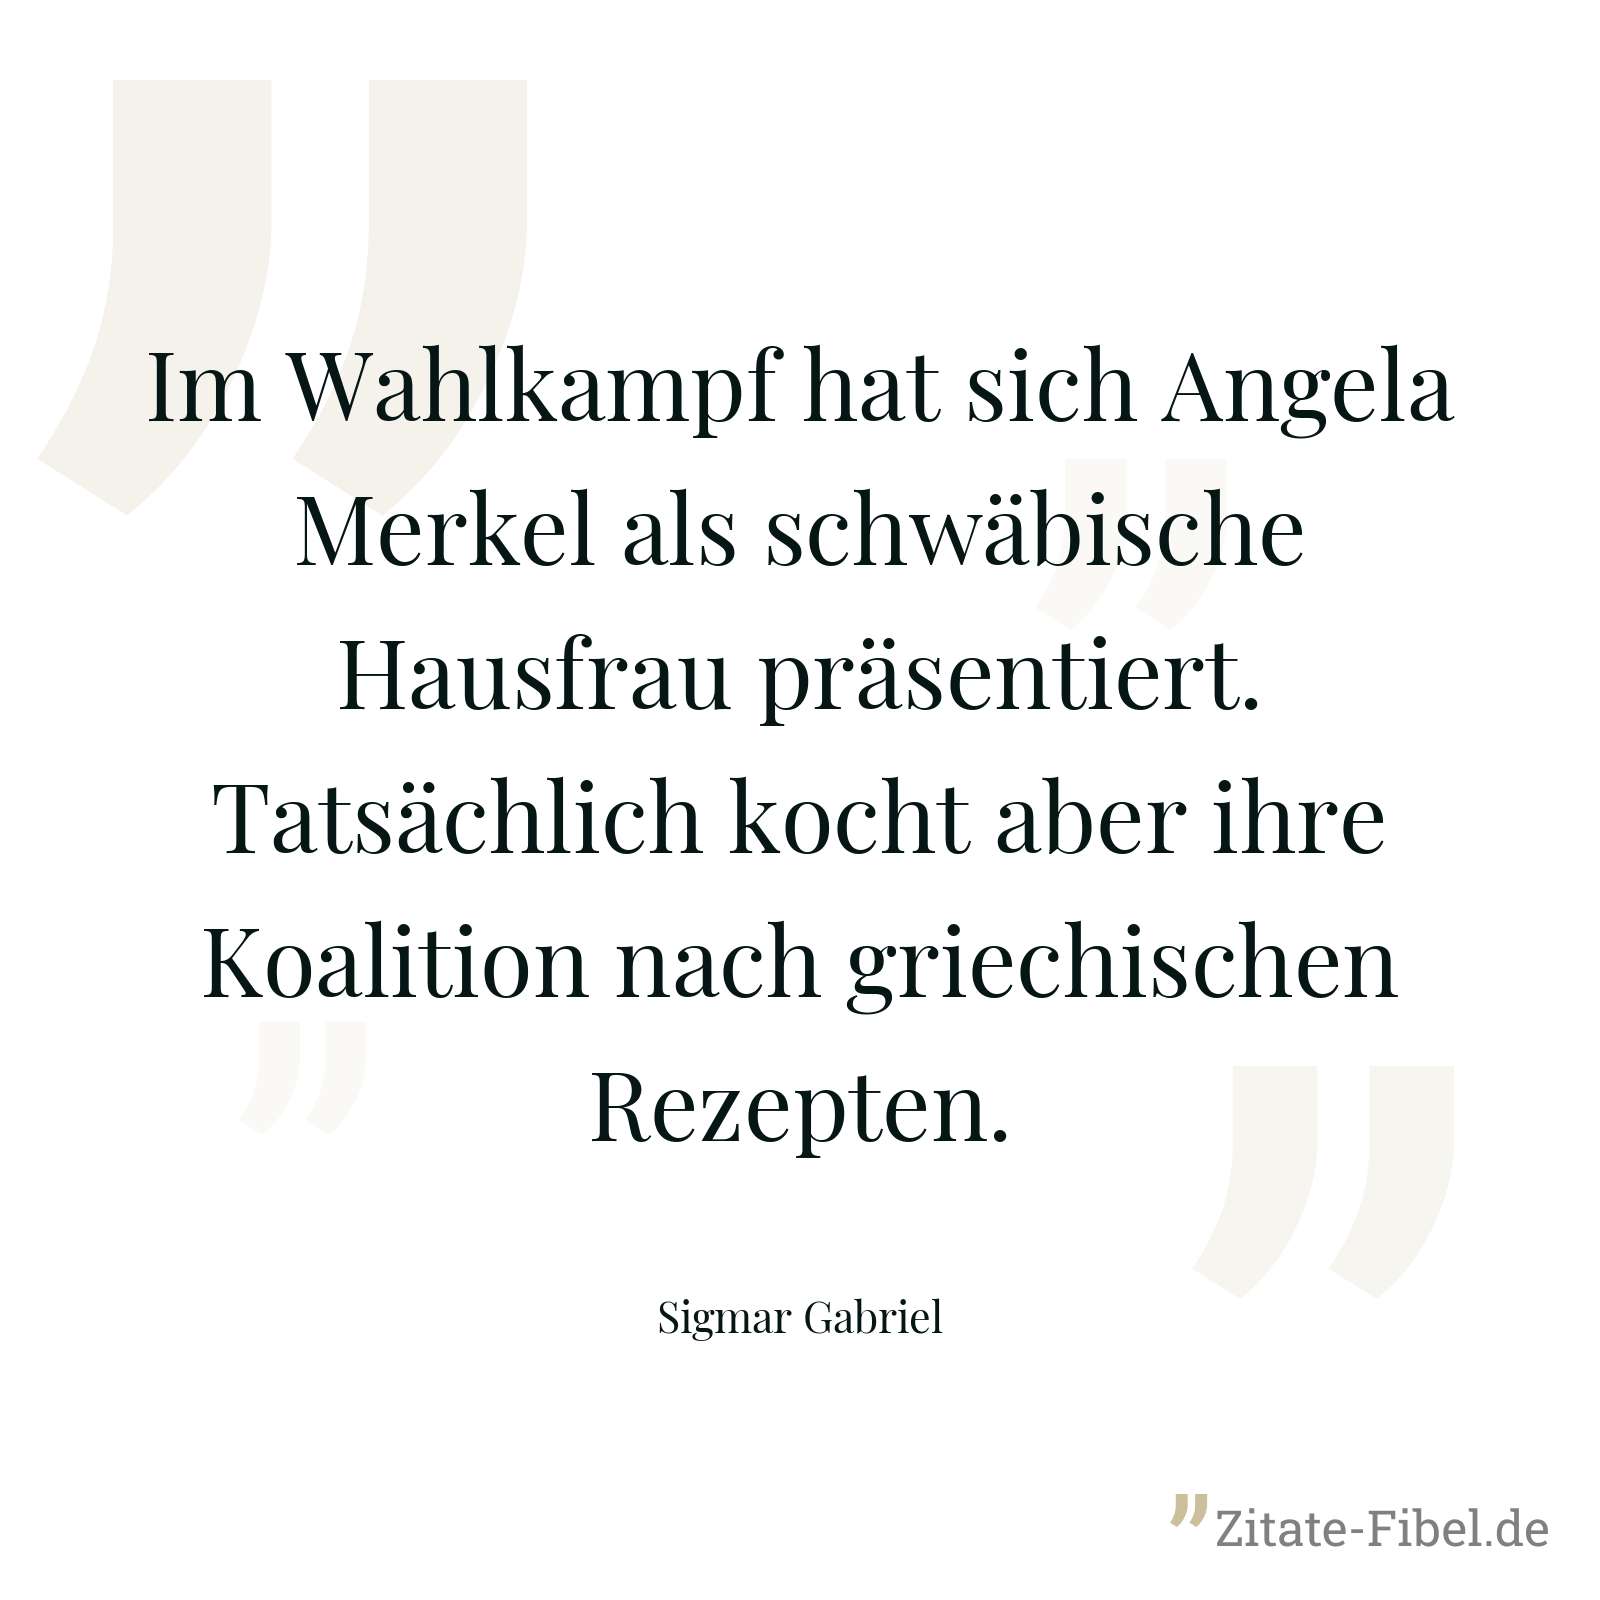 Im Wahlkampf hat sich Angela Merkel als schwäbische Hausfrau präsentiert. Tatsächlich kocht aber ihre Koalition nach griechischen Rezepten. - Sigmar Gabriel